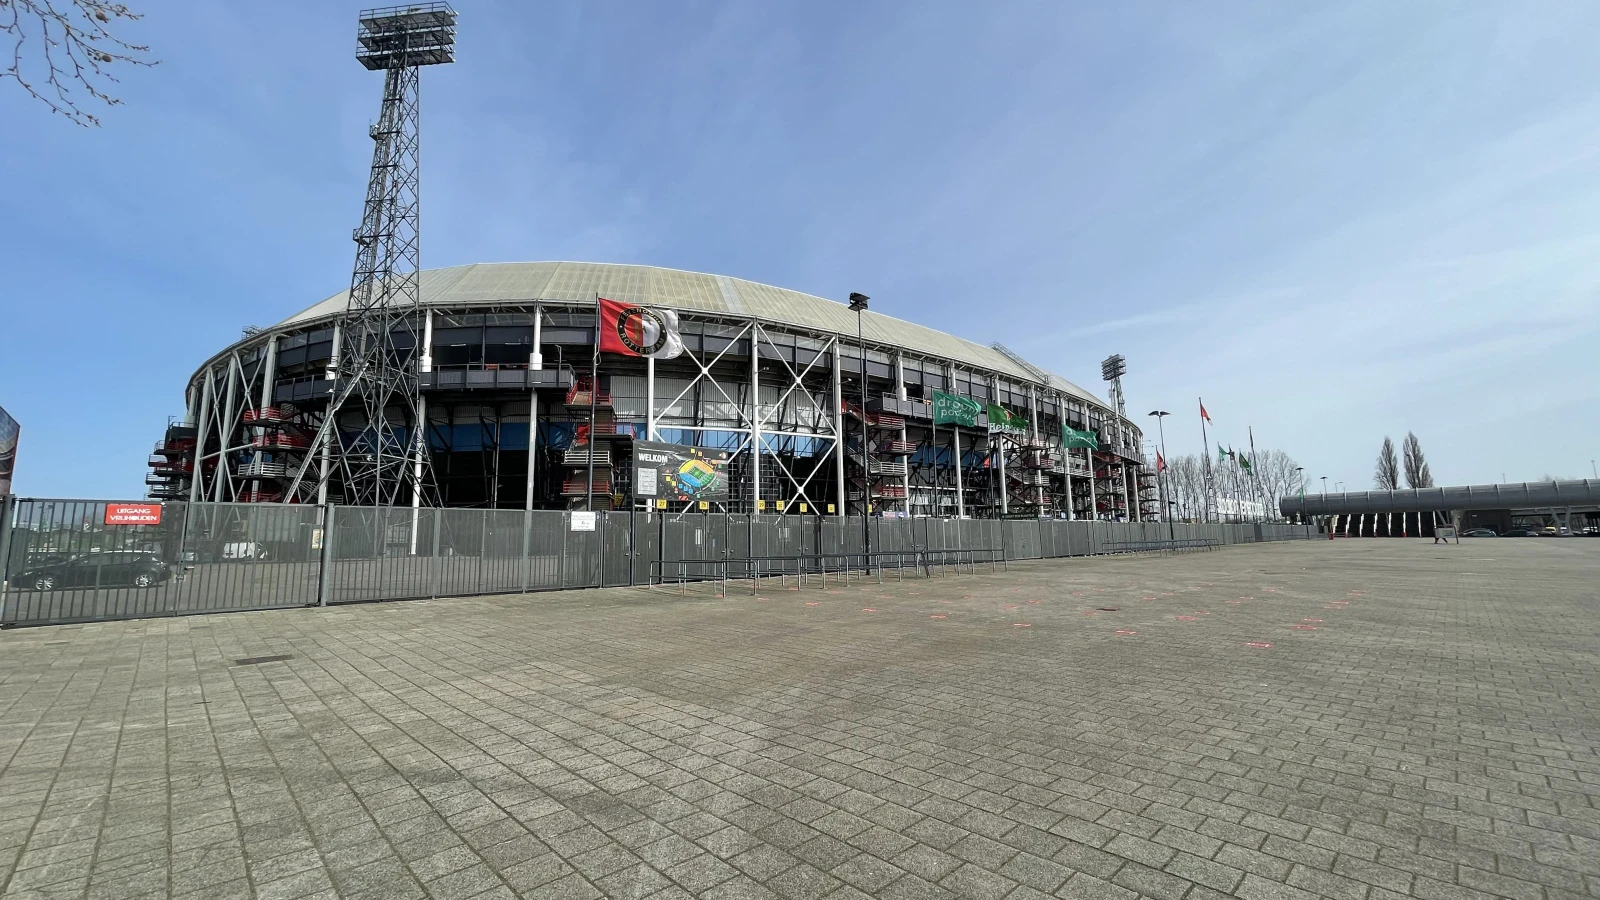 Prijsvrij Vakanties vanaf nieuwe seizoen op shirt van Feyenoord